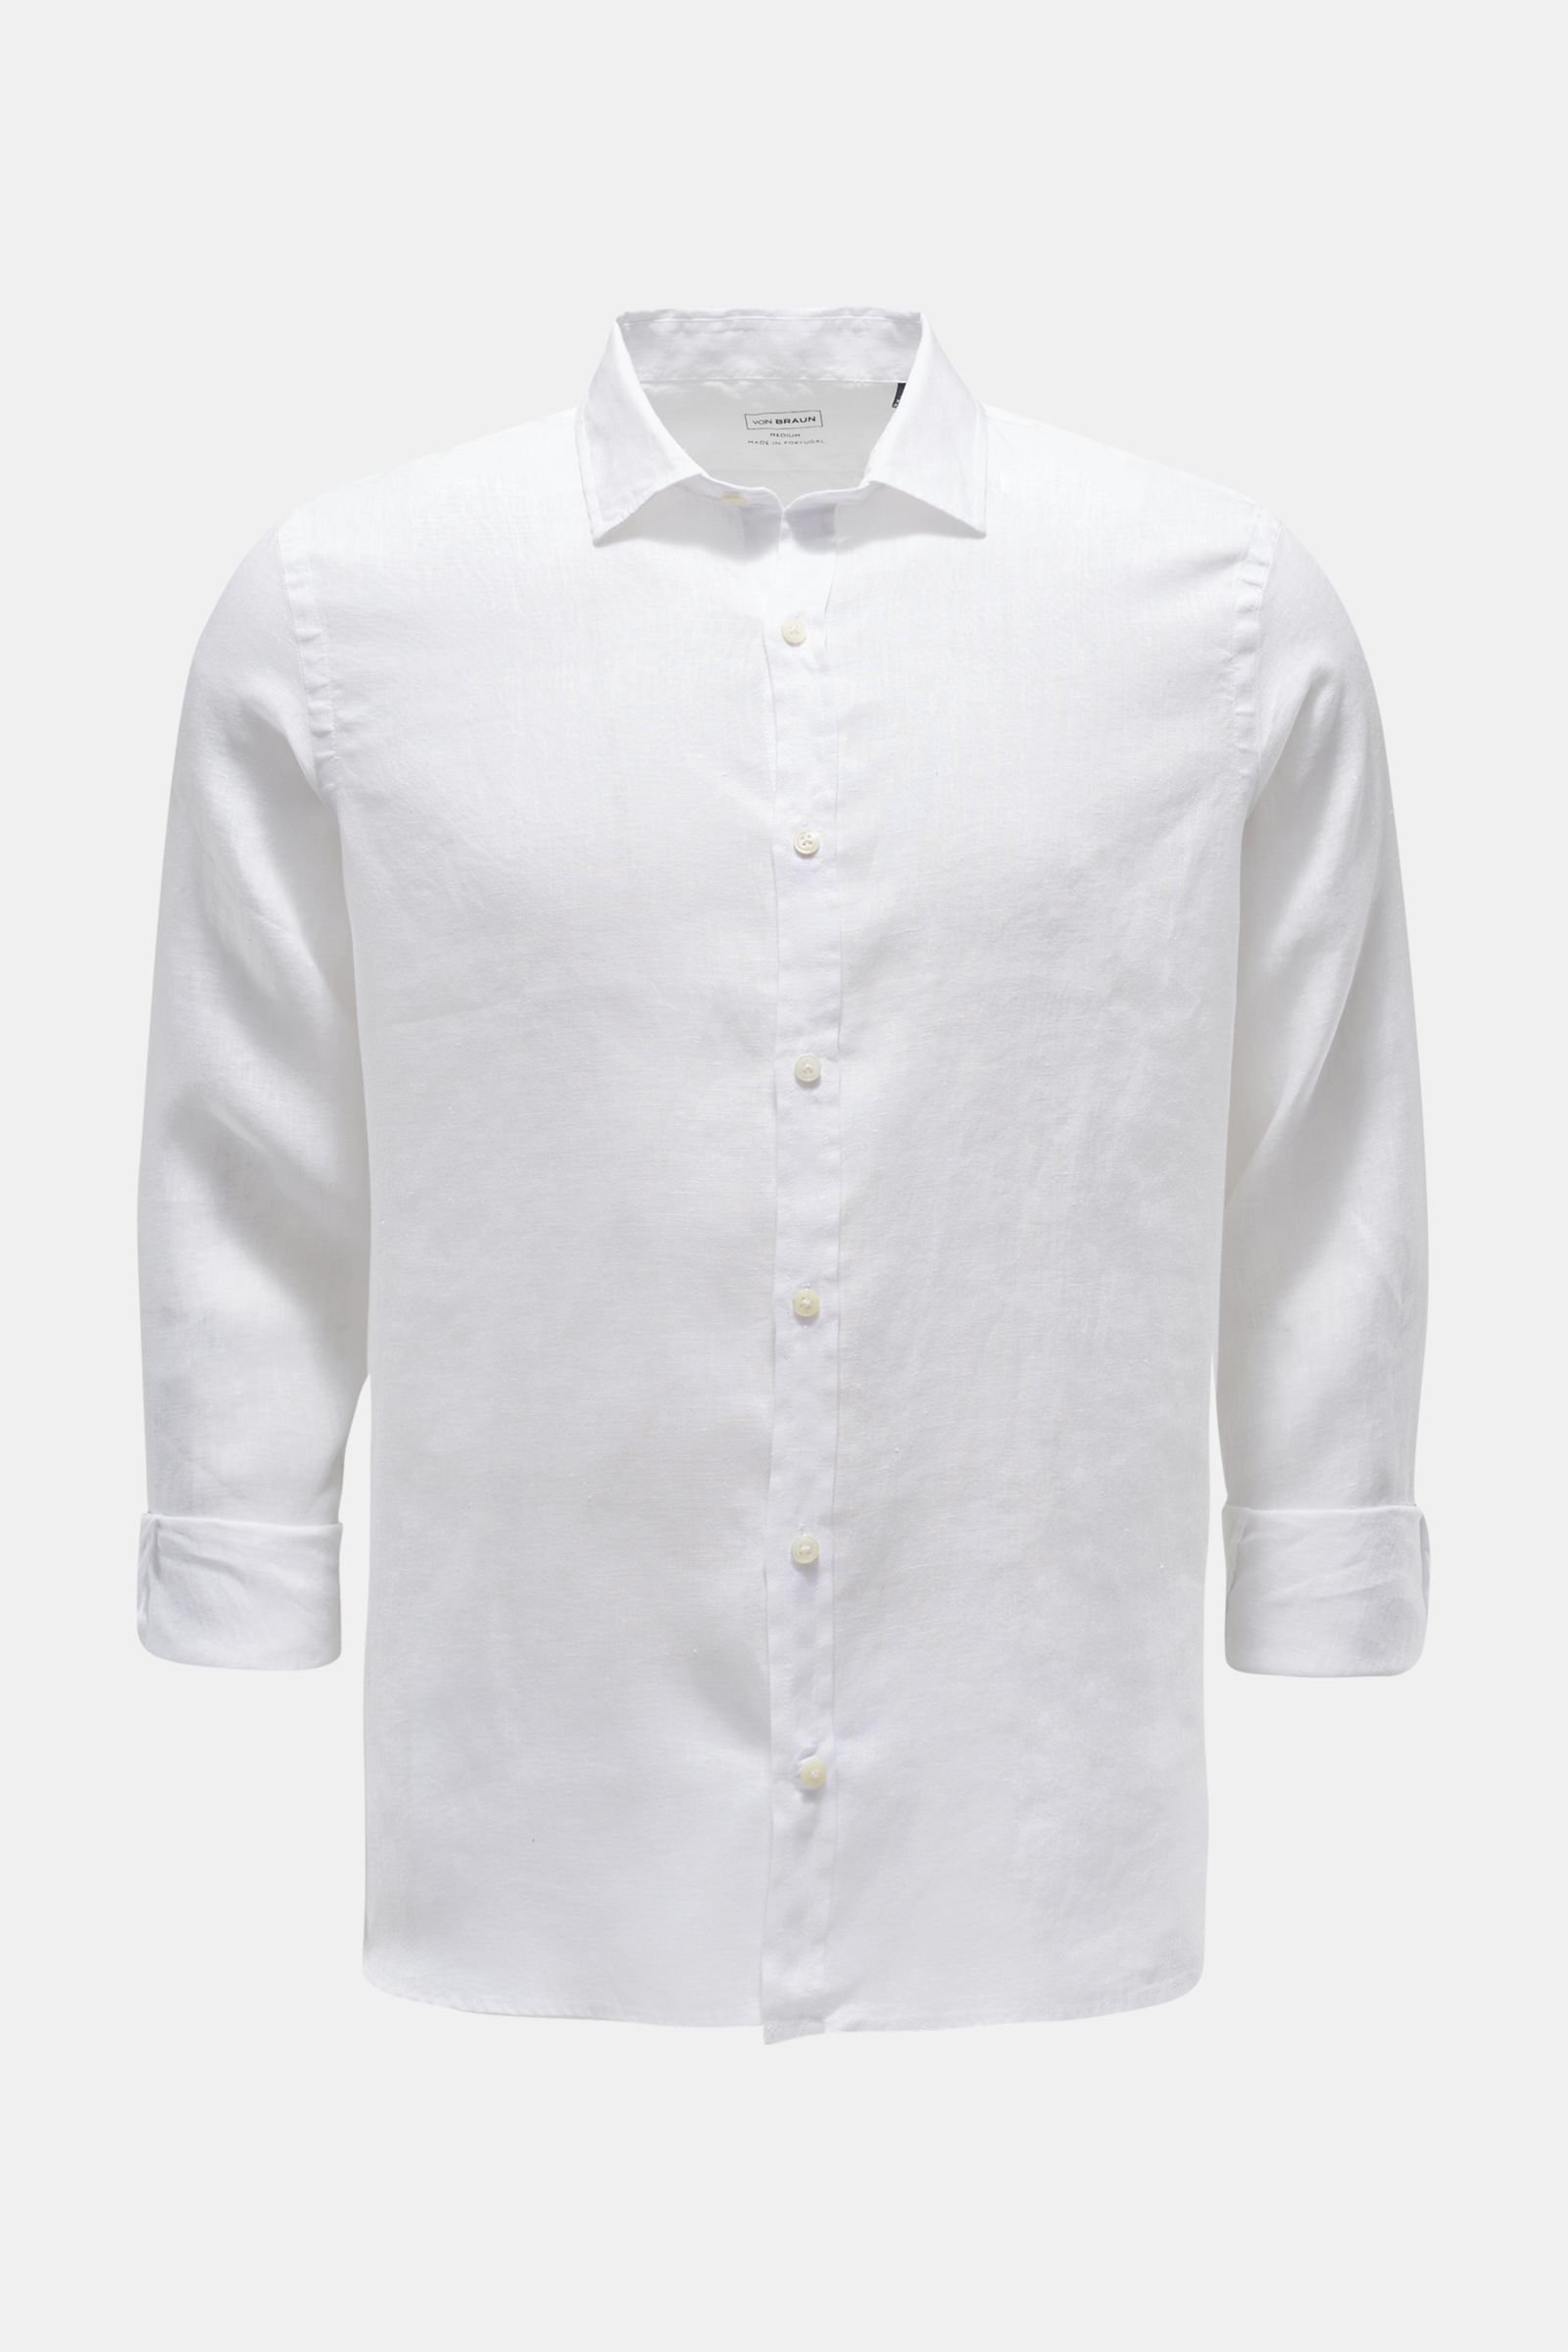 Linen shirt slim collar white